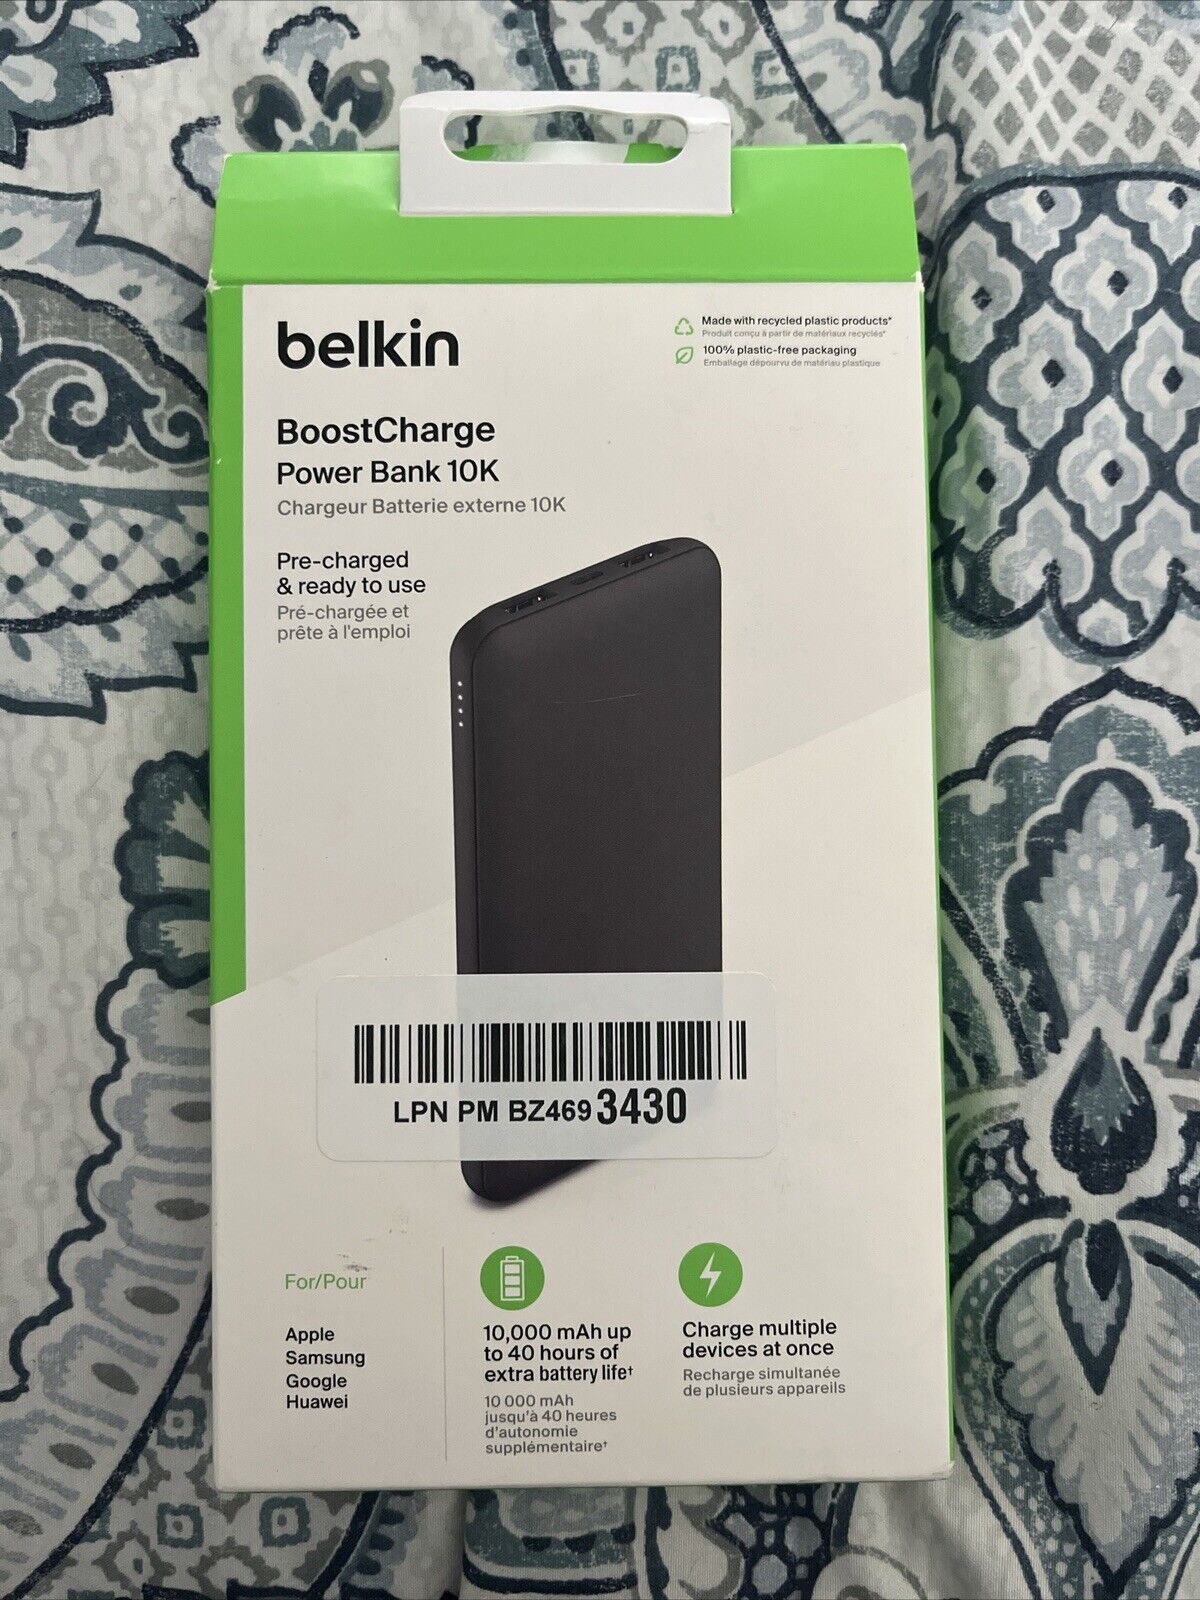 Belkin BoostCharge 3-Port Power Bank 10K - Black New- Open Box